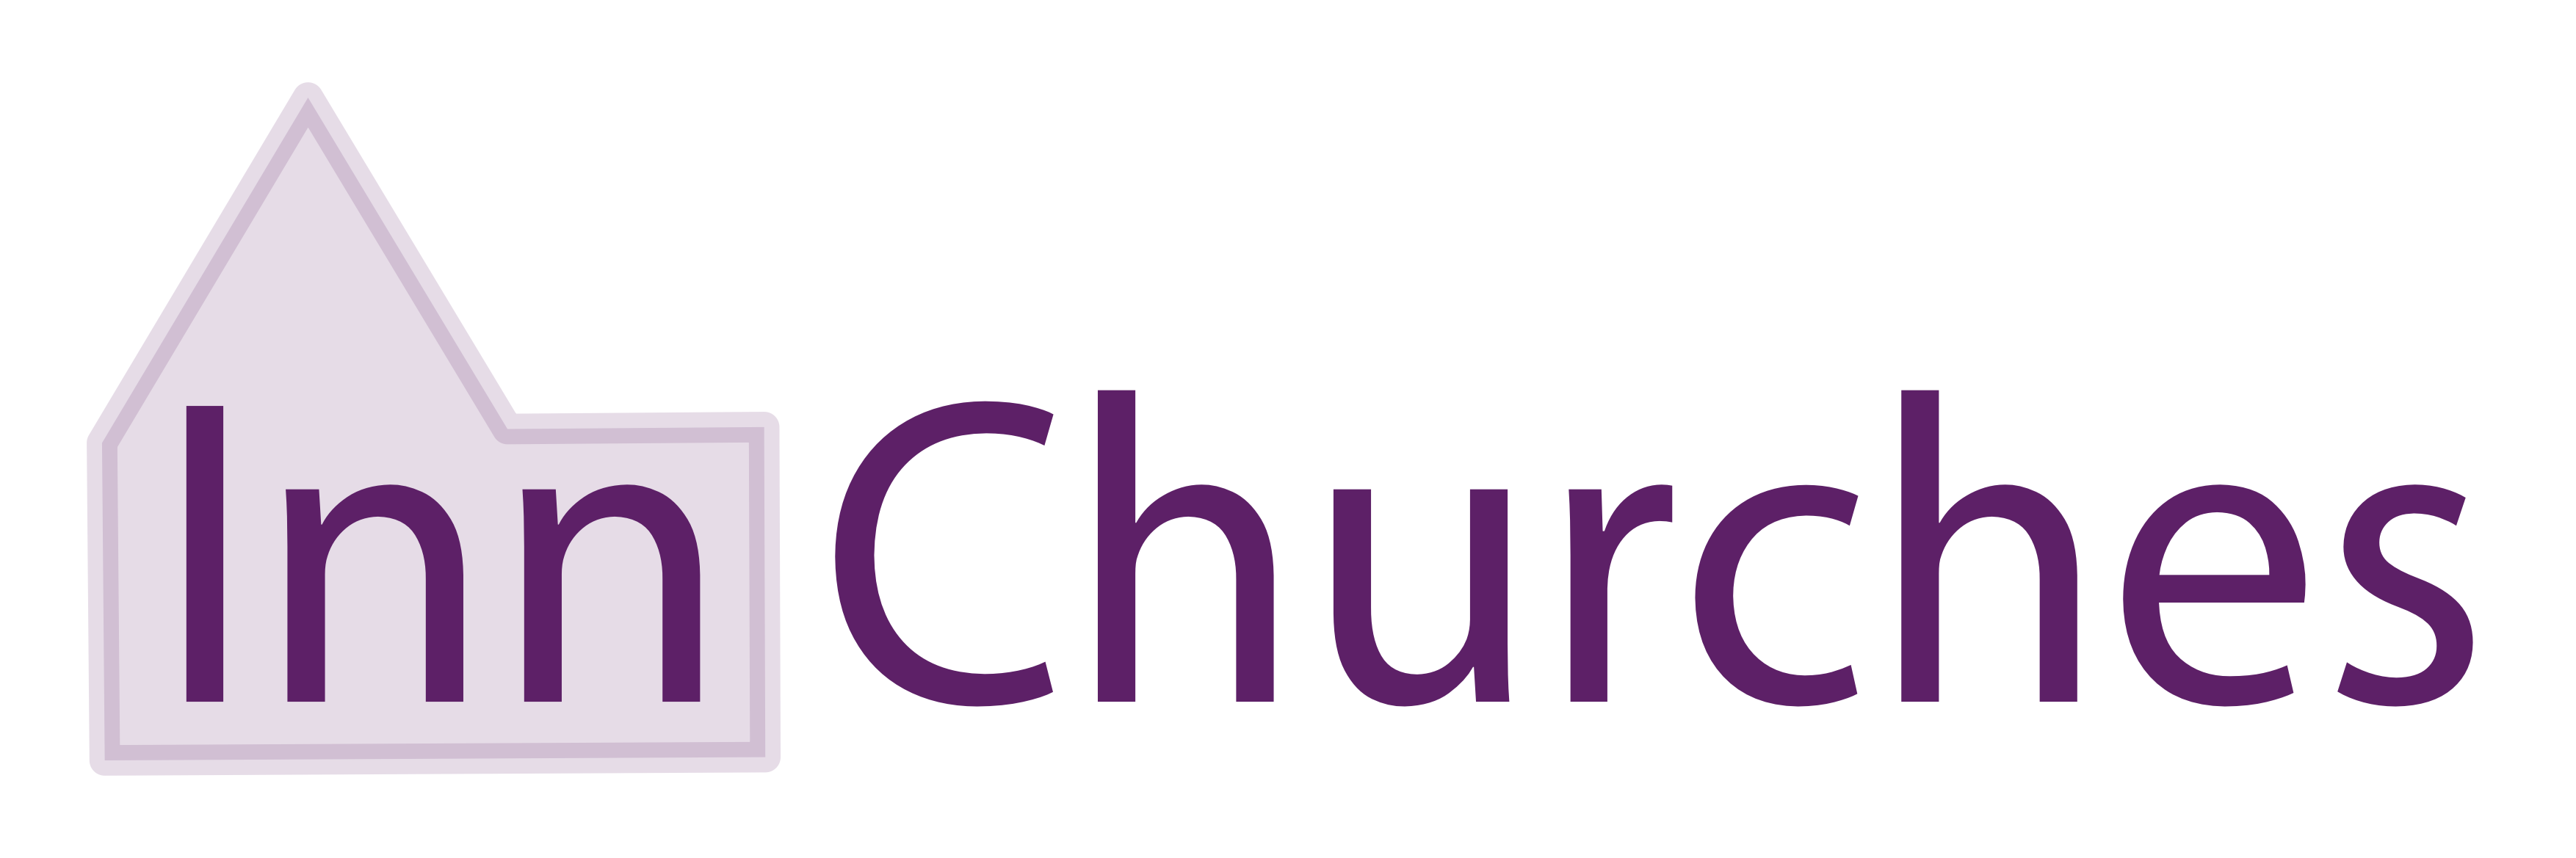 Inn Churches logo